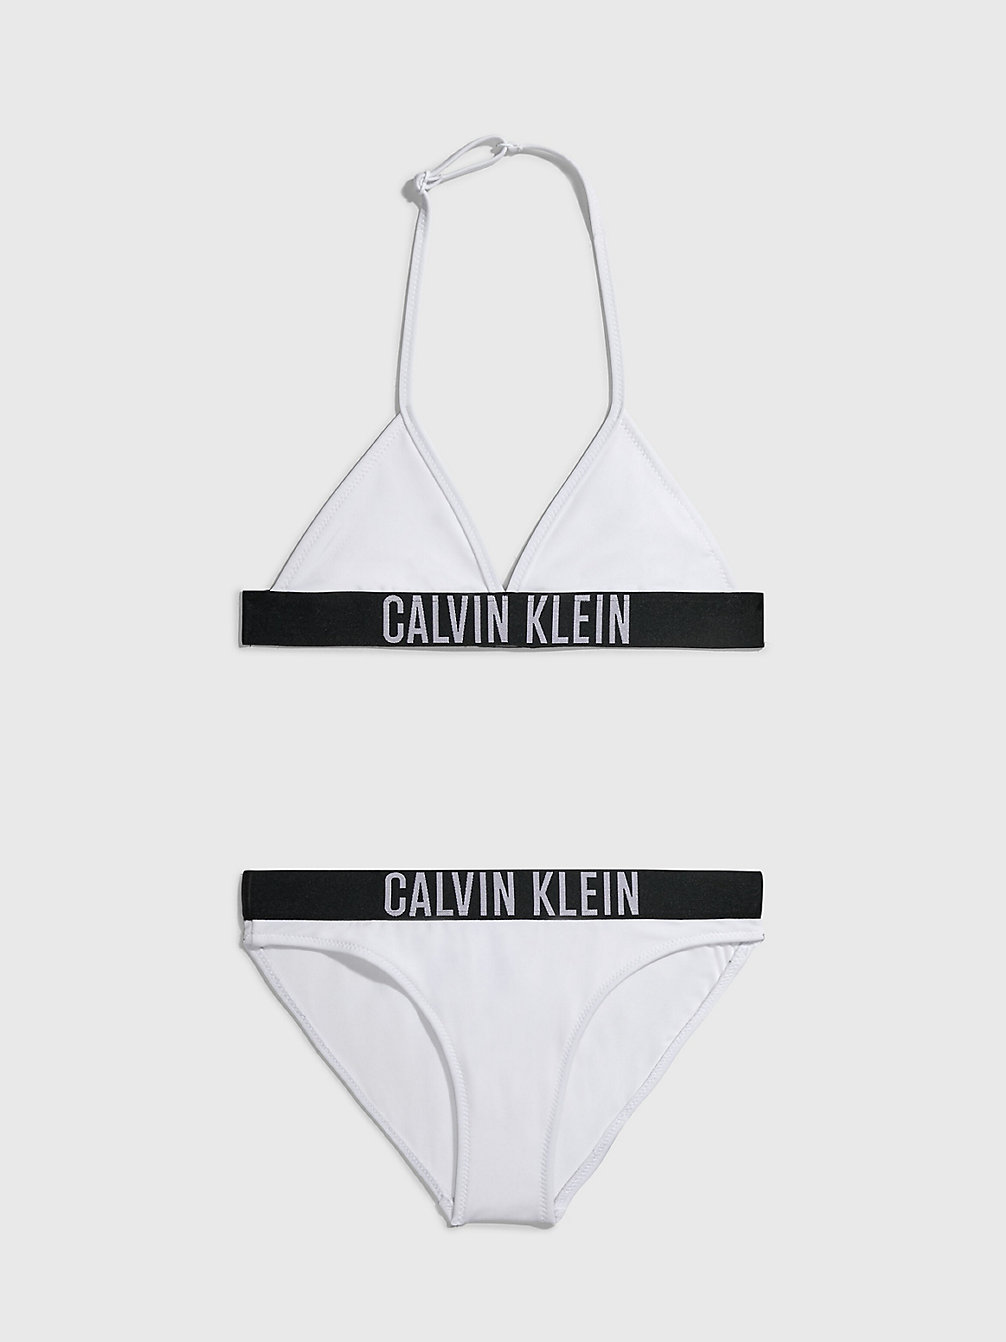 PVH CLASSIC WHITE Triangelbikini Voor Meisjes - Intense Power undefined meisjes Calvin Klein